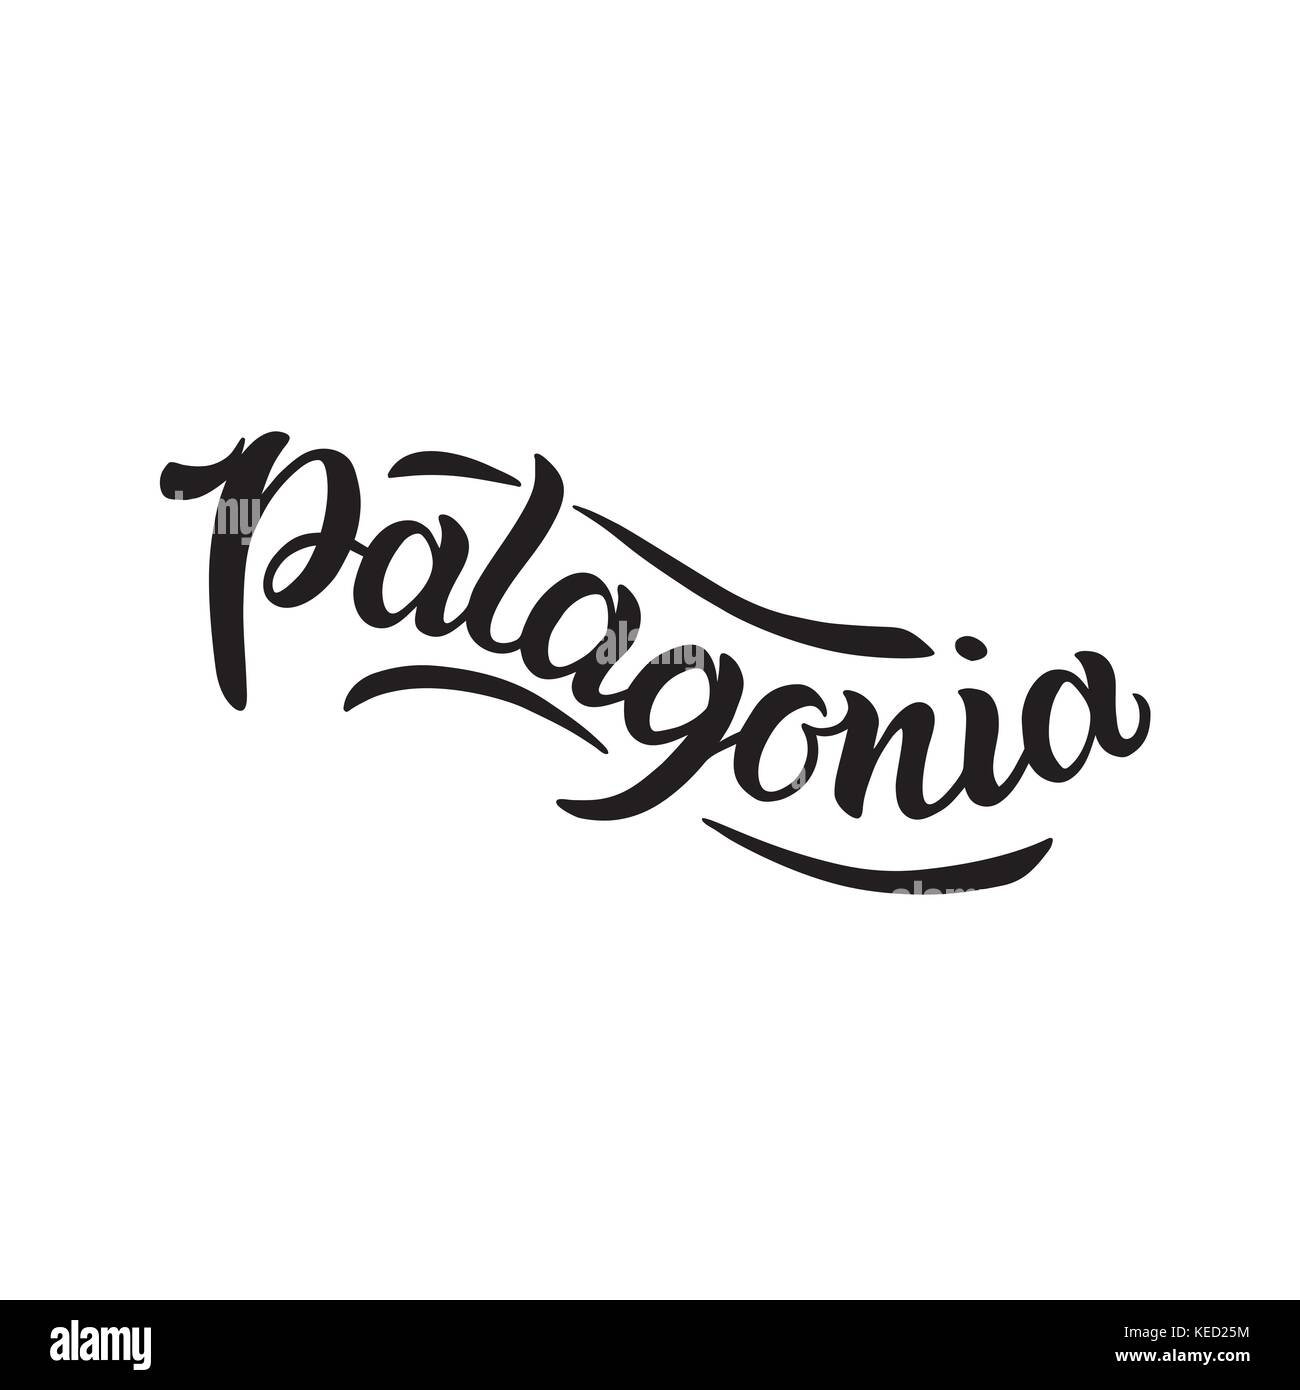 Stadt Logo auf weißem isoliert. black label oder Firmenschriftzug. vintage Abzeichen Kalligraphie in grunge Stil. Sehr gut für T-Shirts oder Poster. Patagonien, Südamerika, Argentinien, Chile Stock Vektor